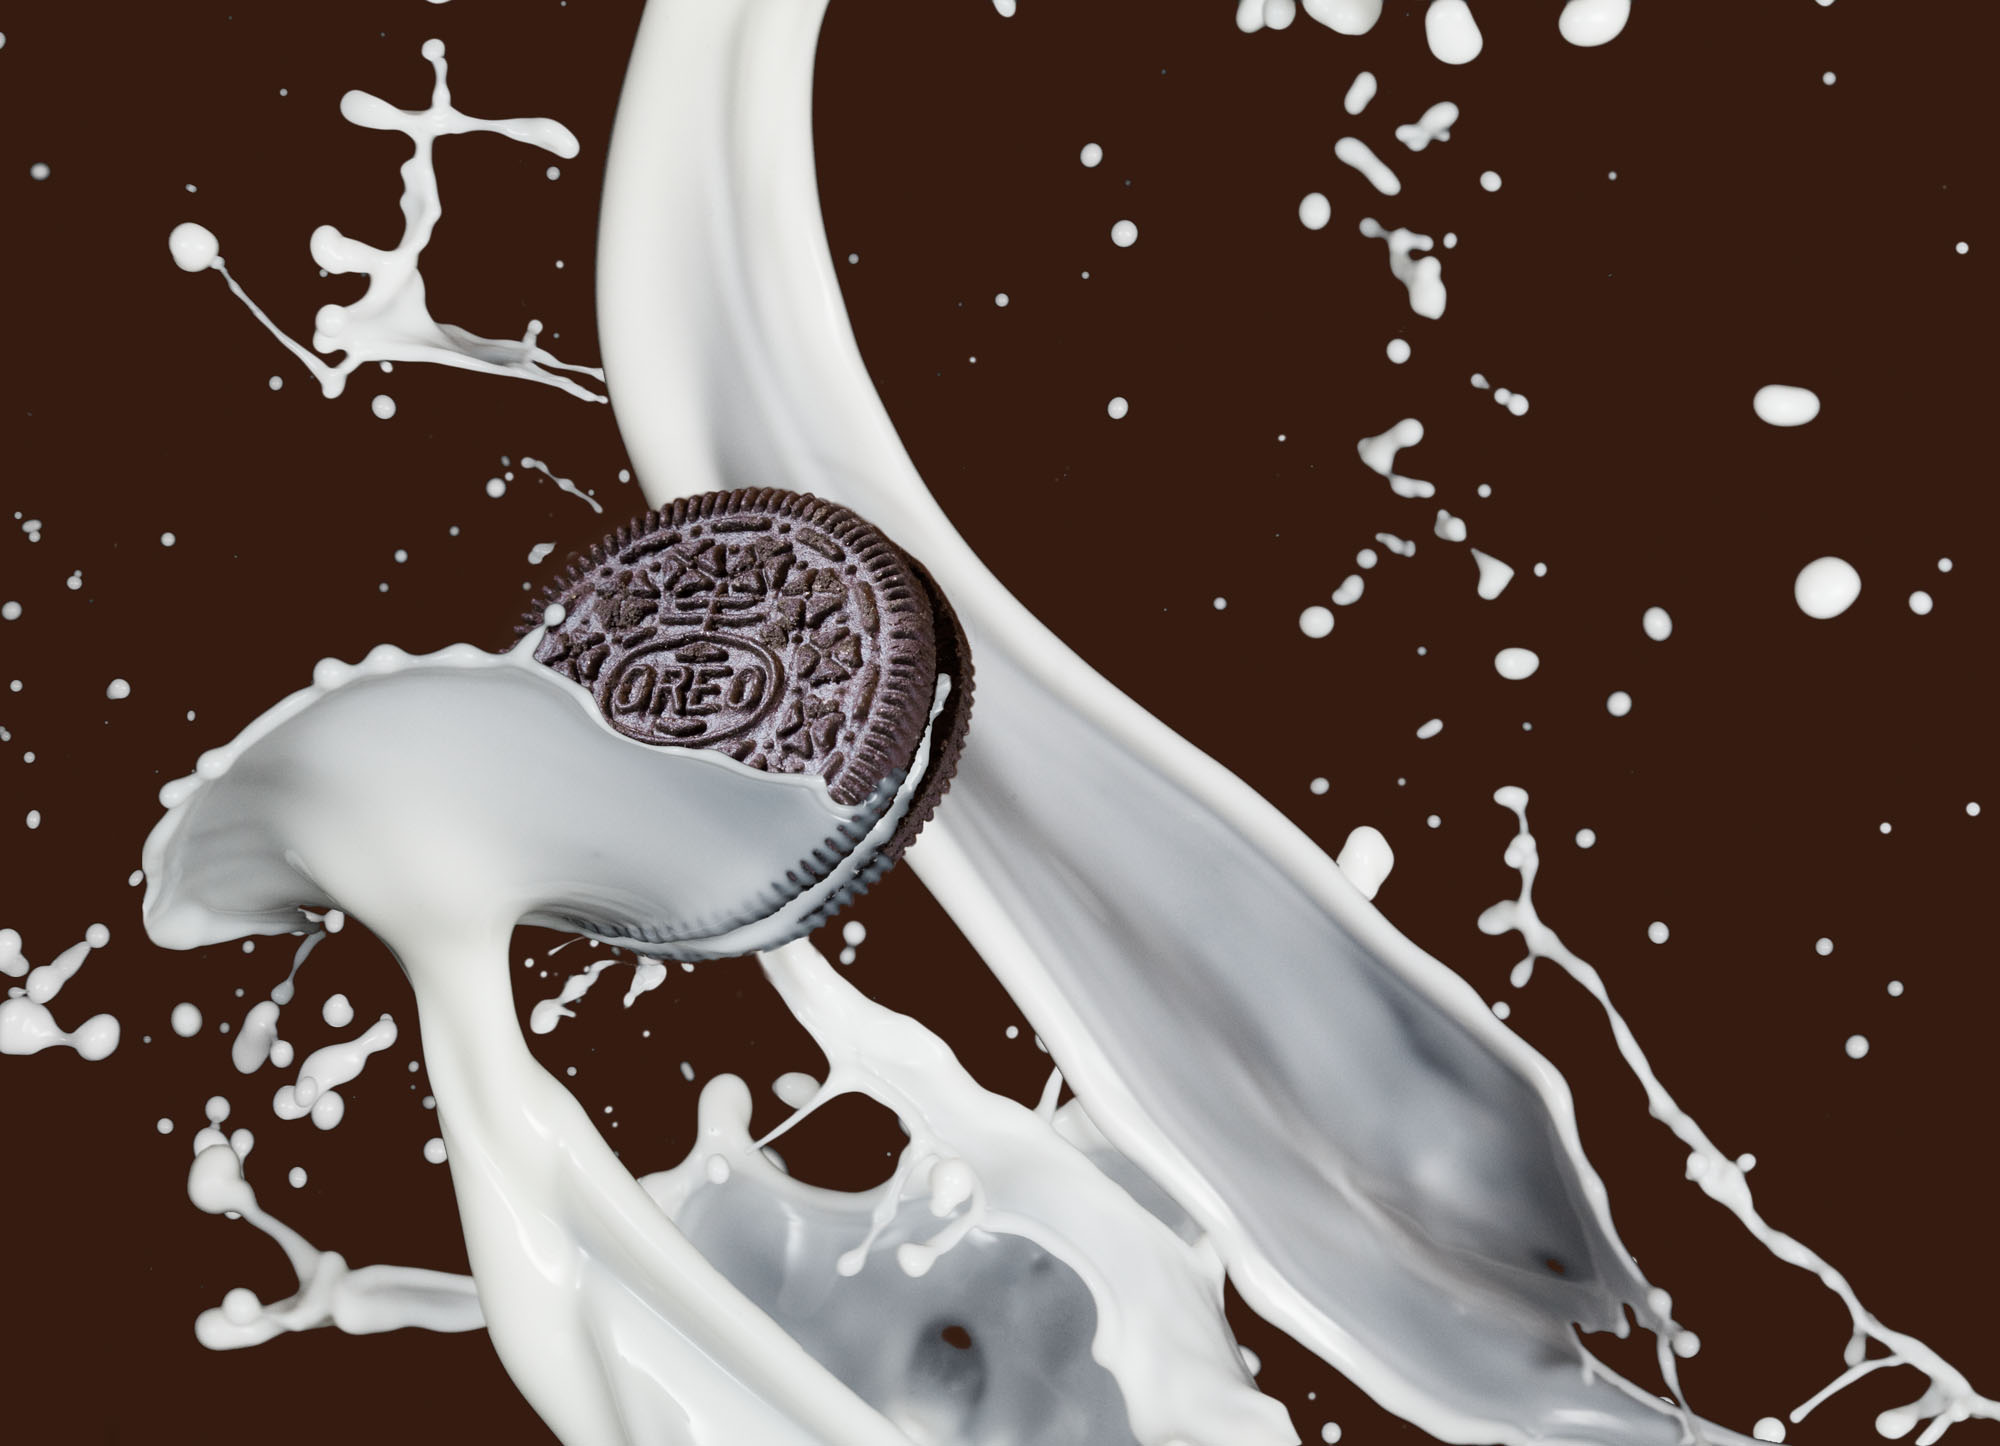 Oreo cookie splash with milk | Splash Photography | Food Photography | Product Photography | Shot in Denver Colorado